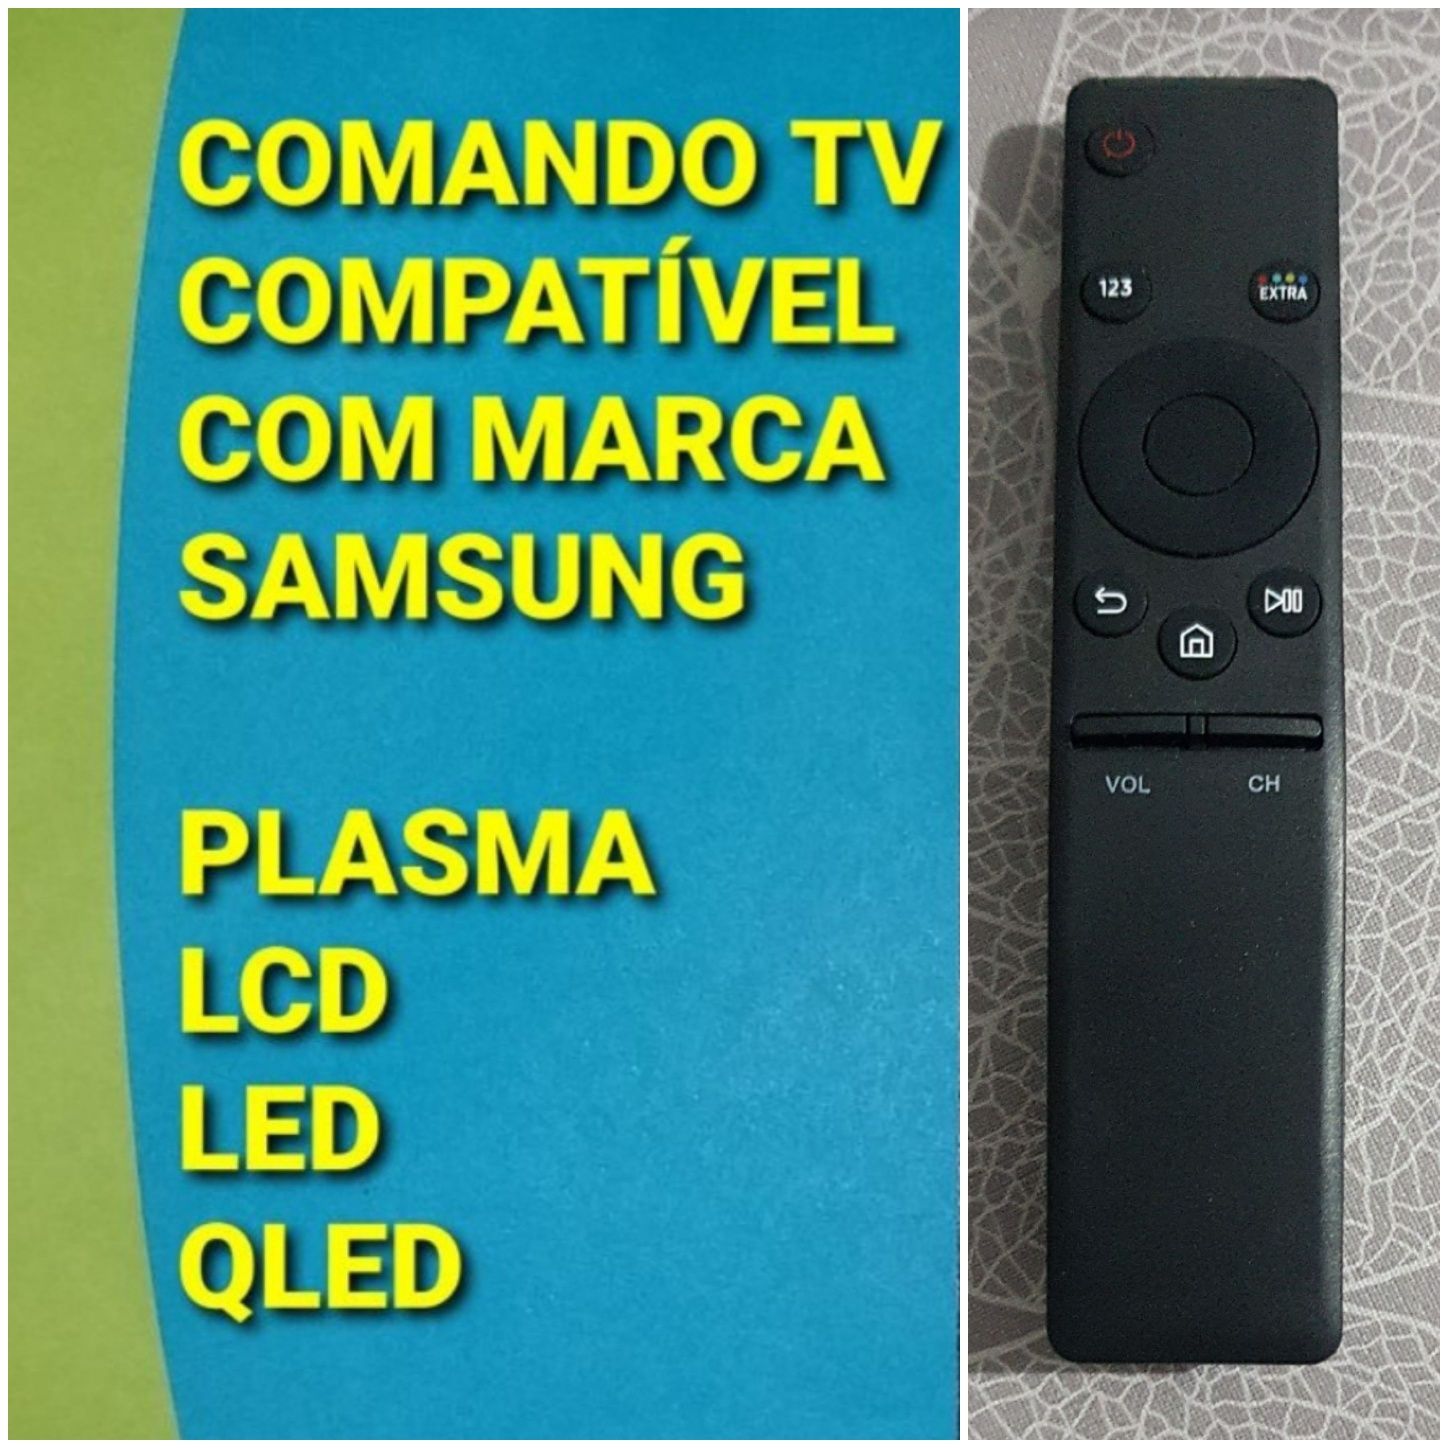 Comandos Samsung SmartTV